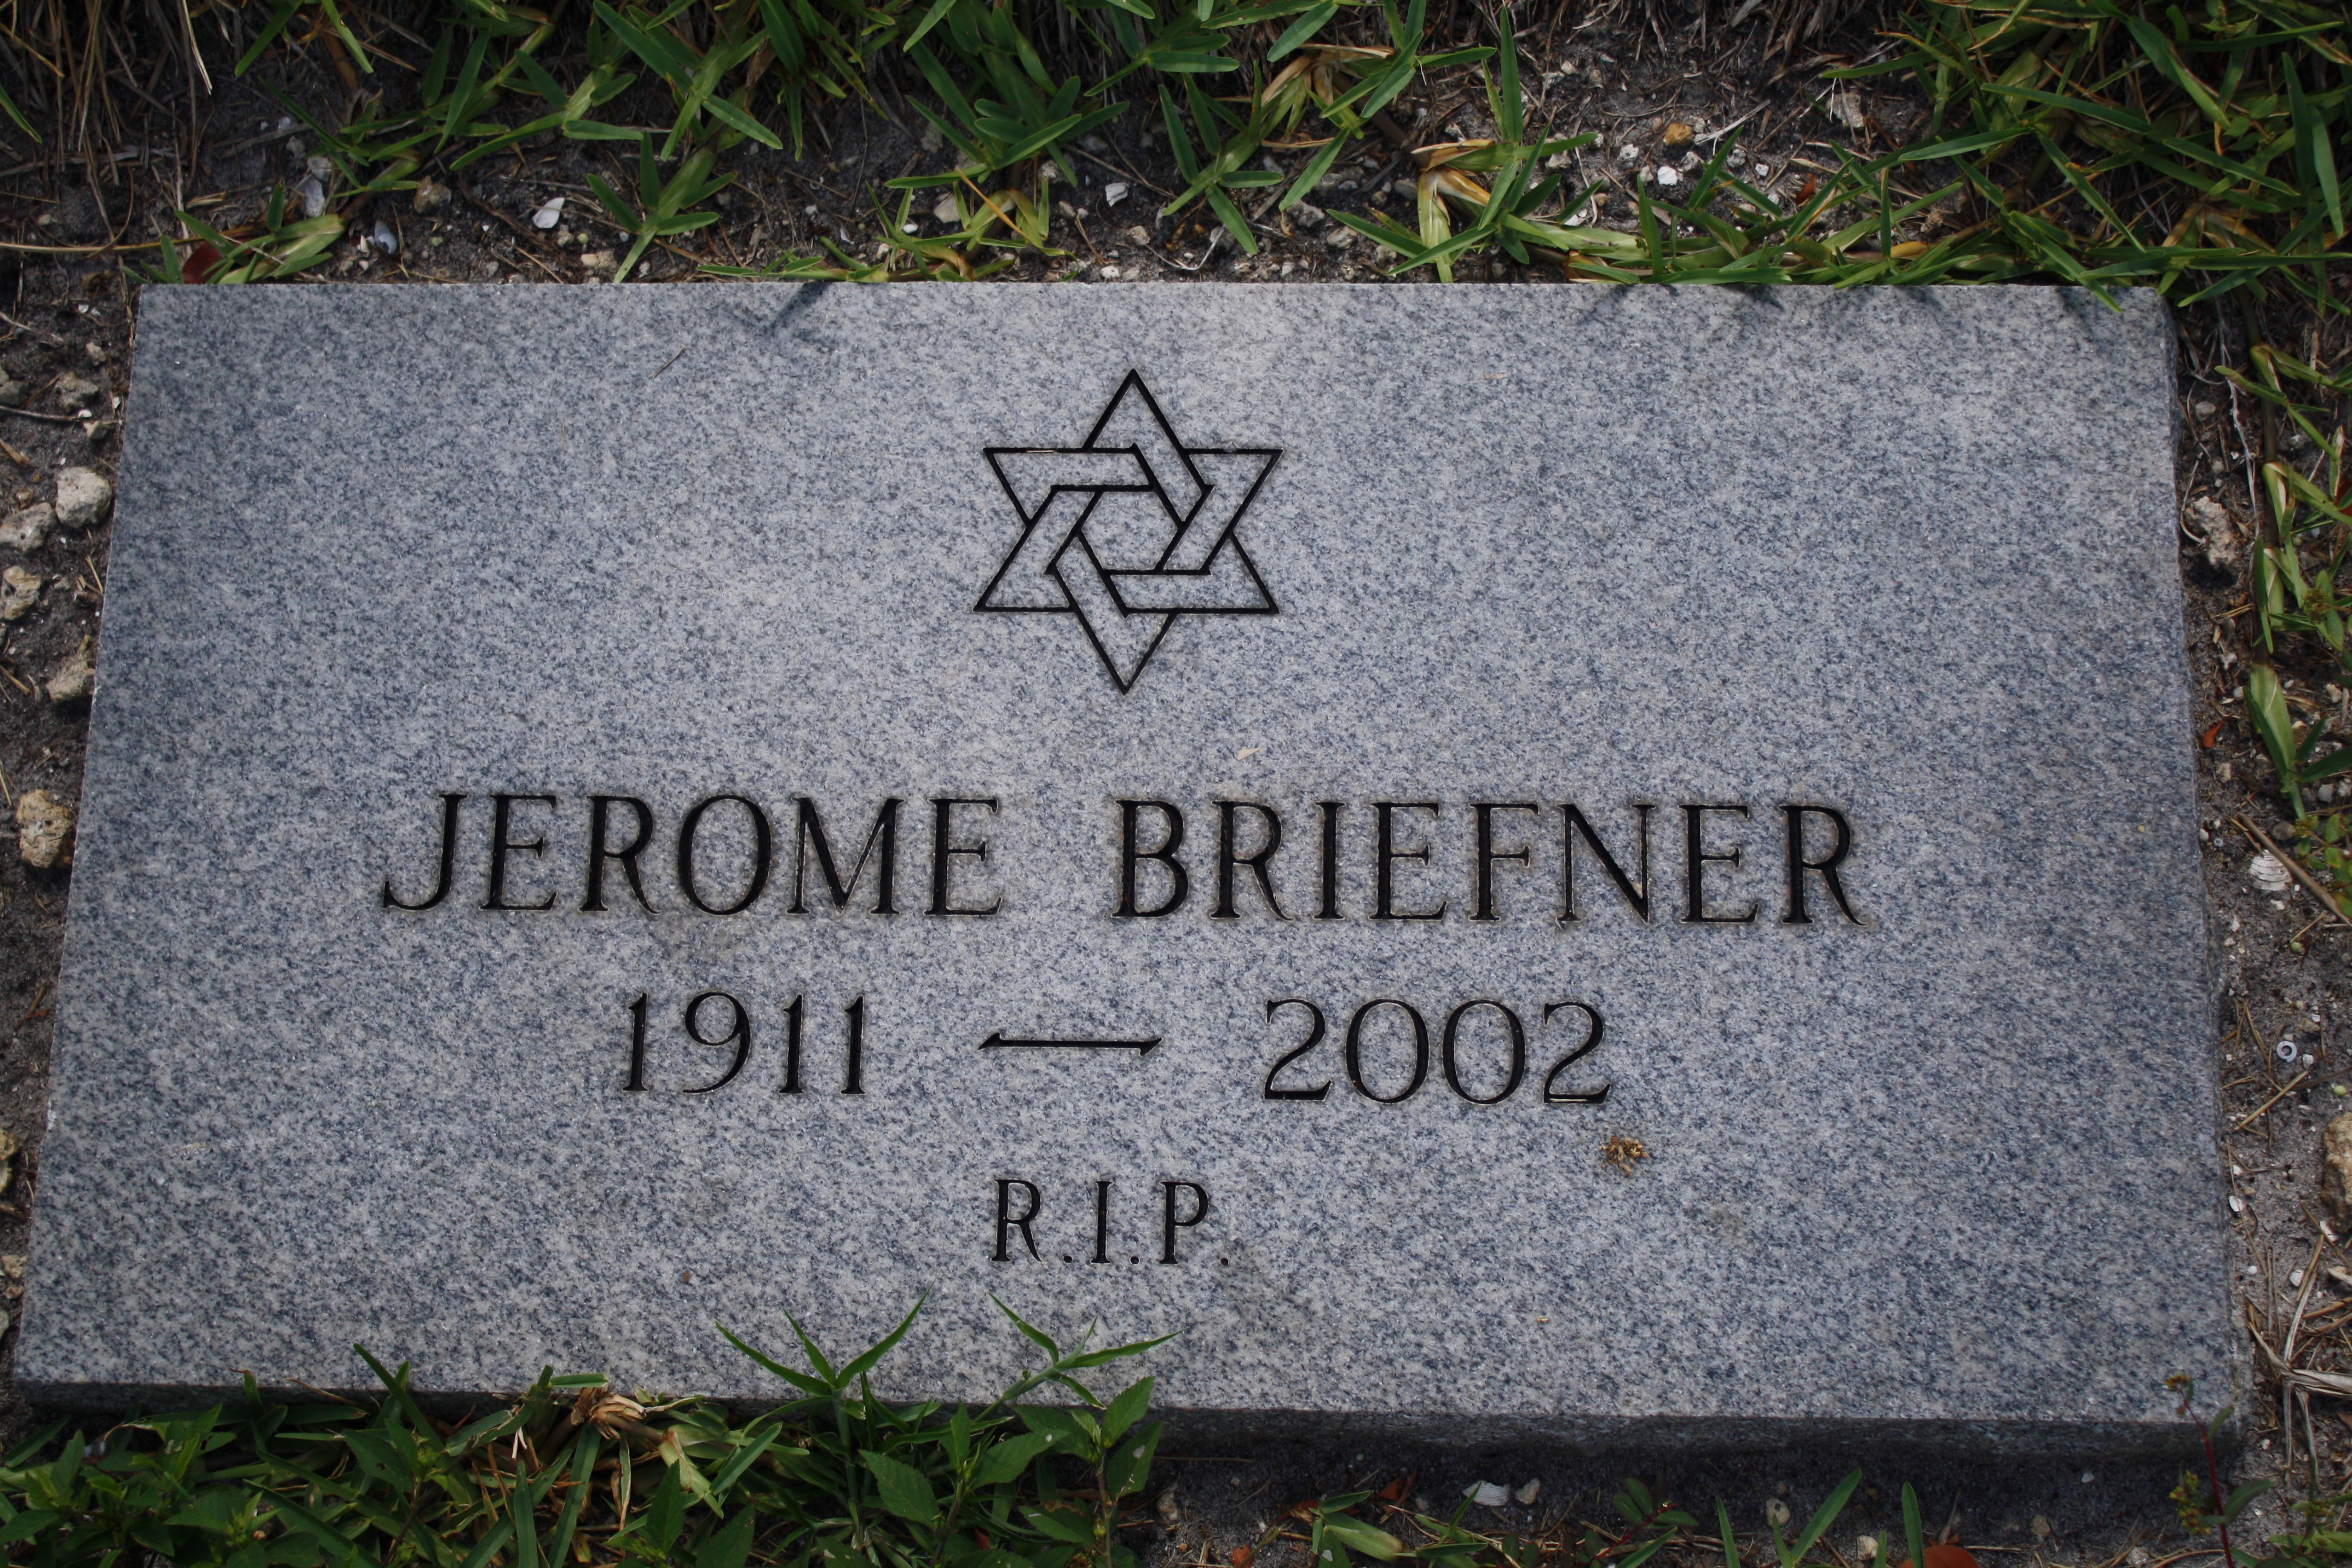 Jerome Briefner